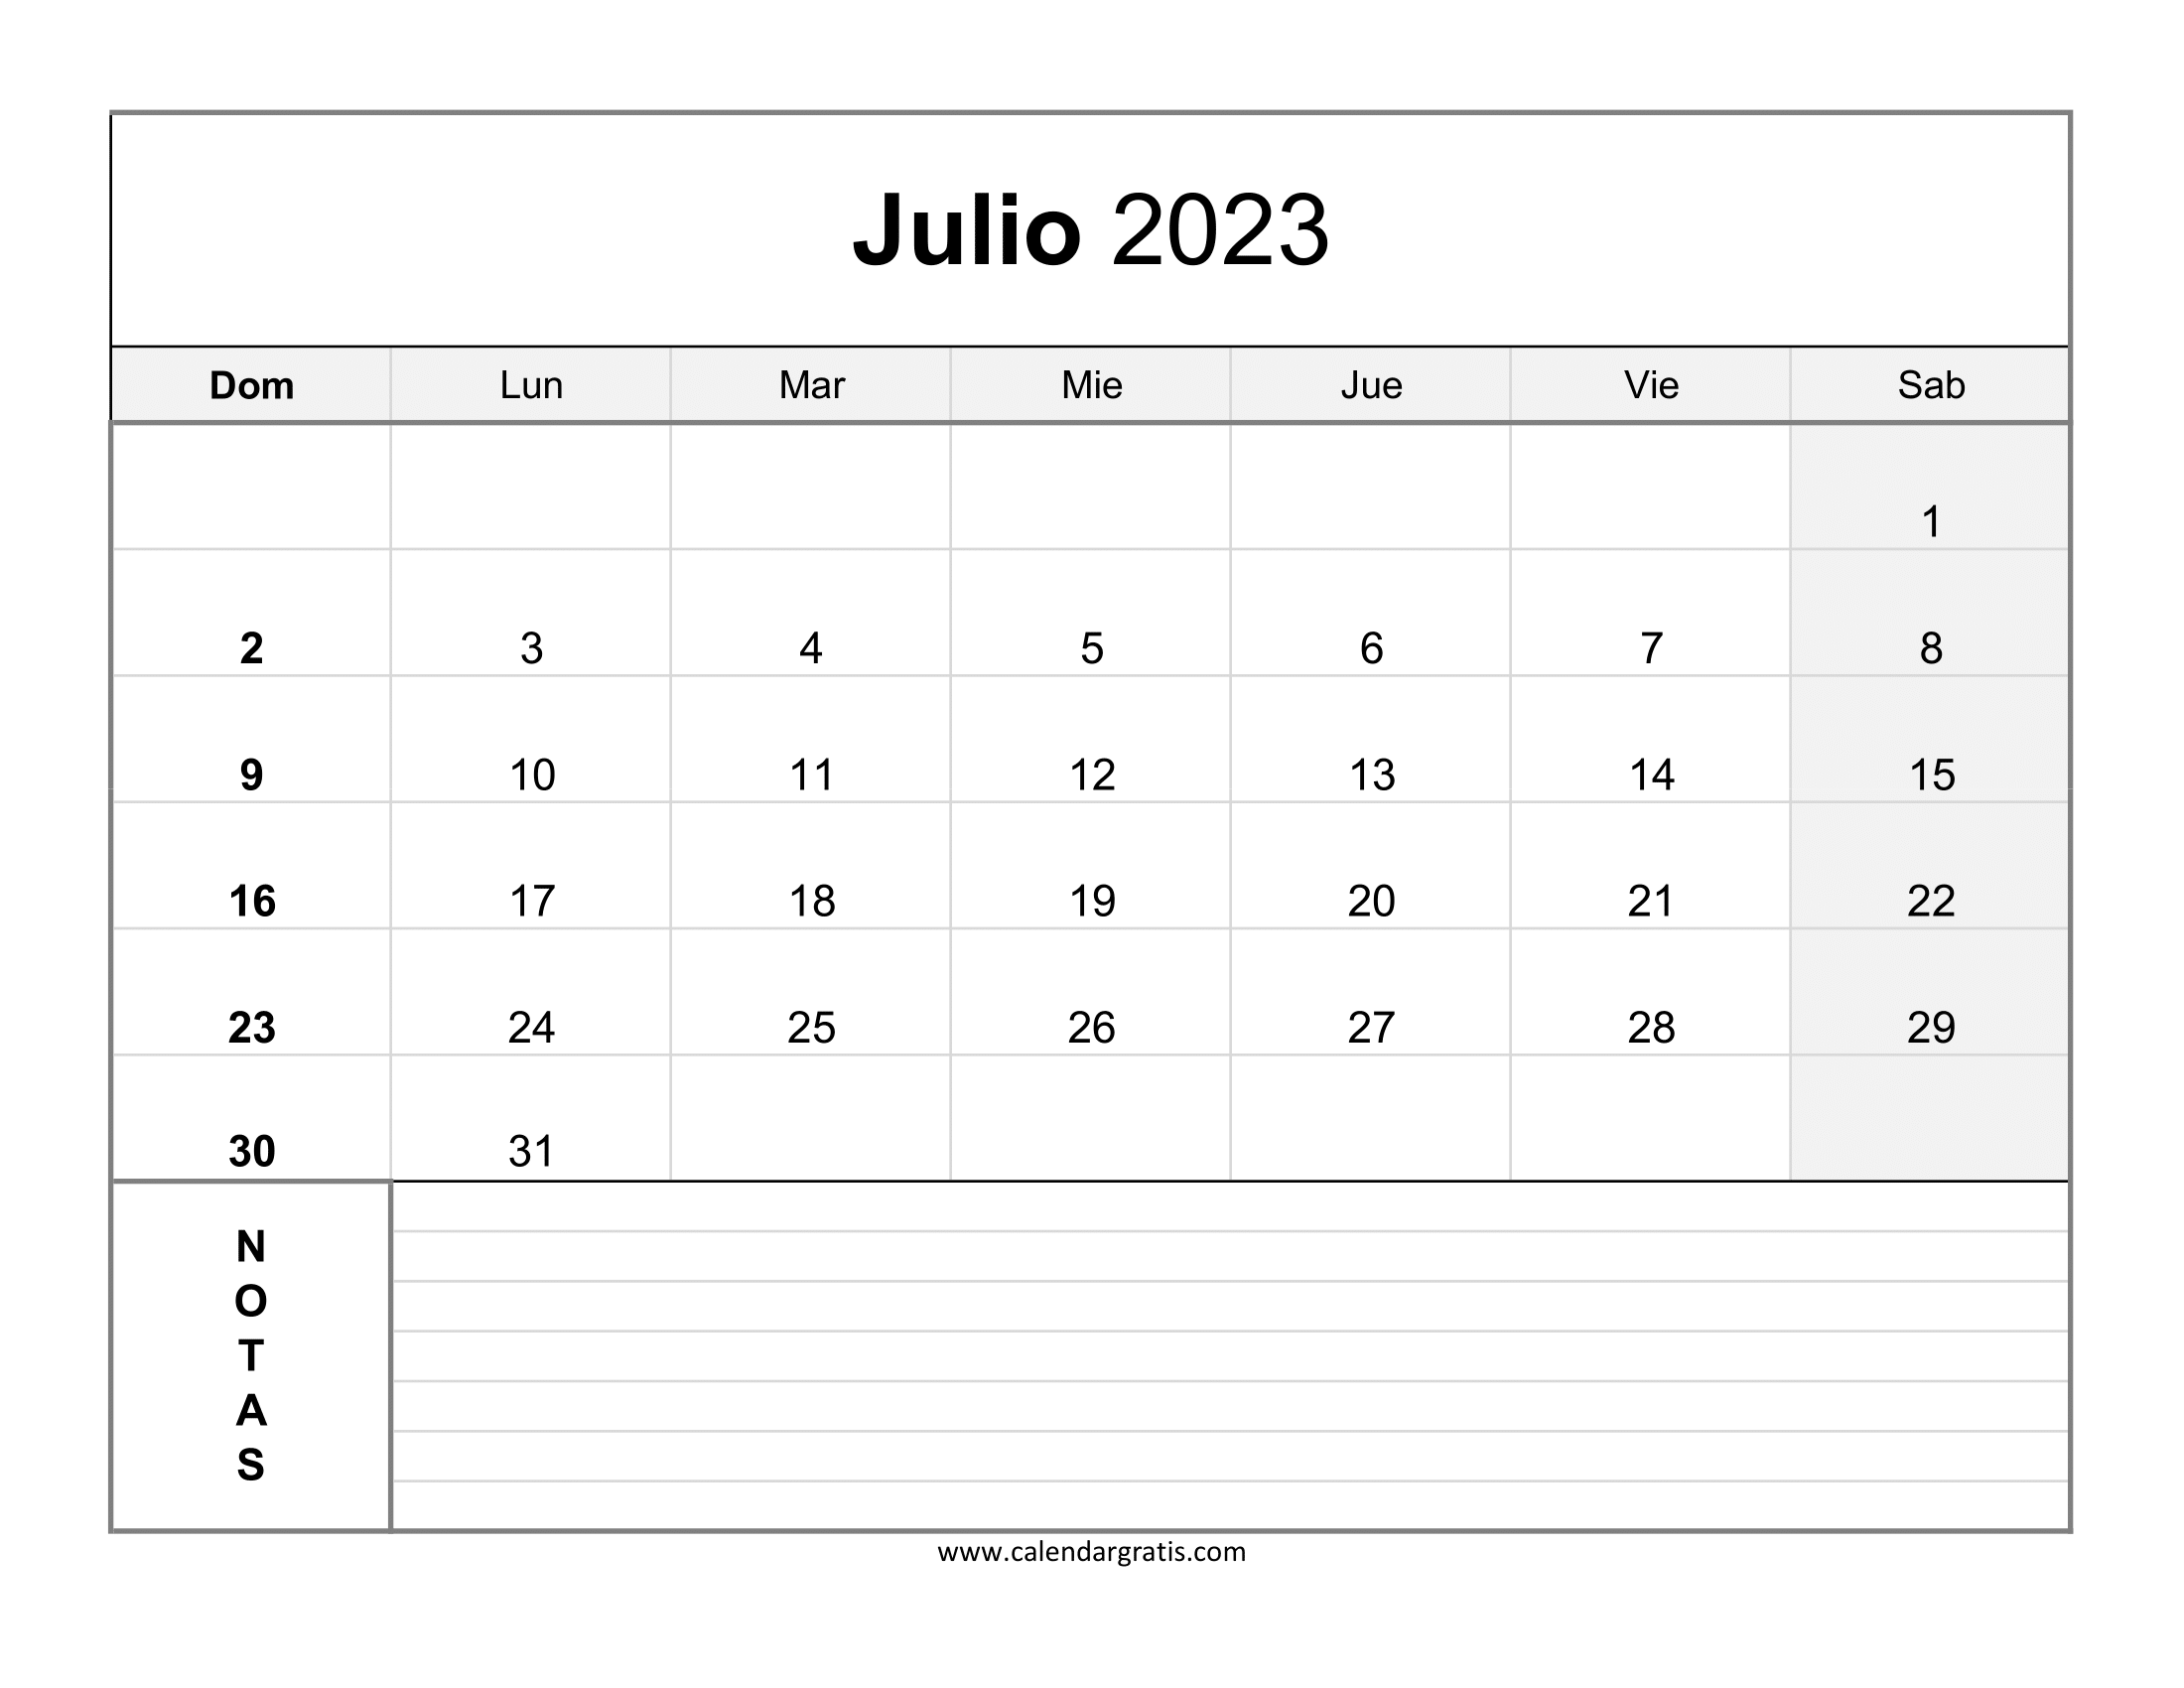 El Calendario De Julio Imprimir Calendario Julio 2023 con Notas - Calendar Gratis